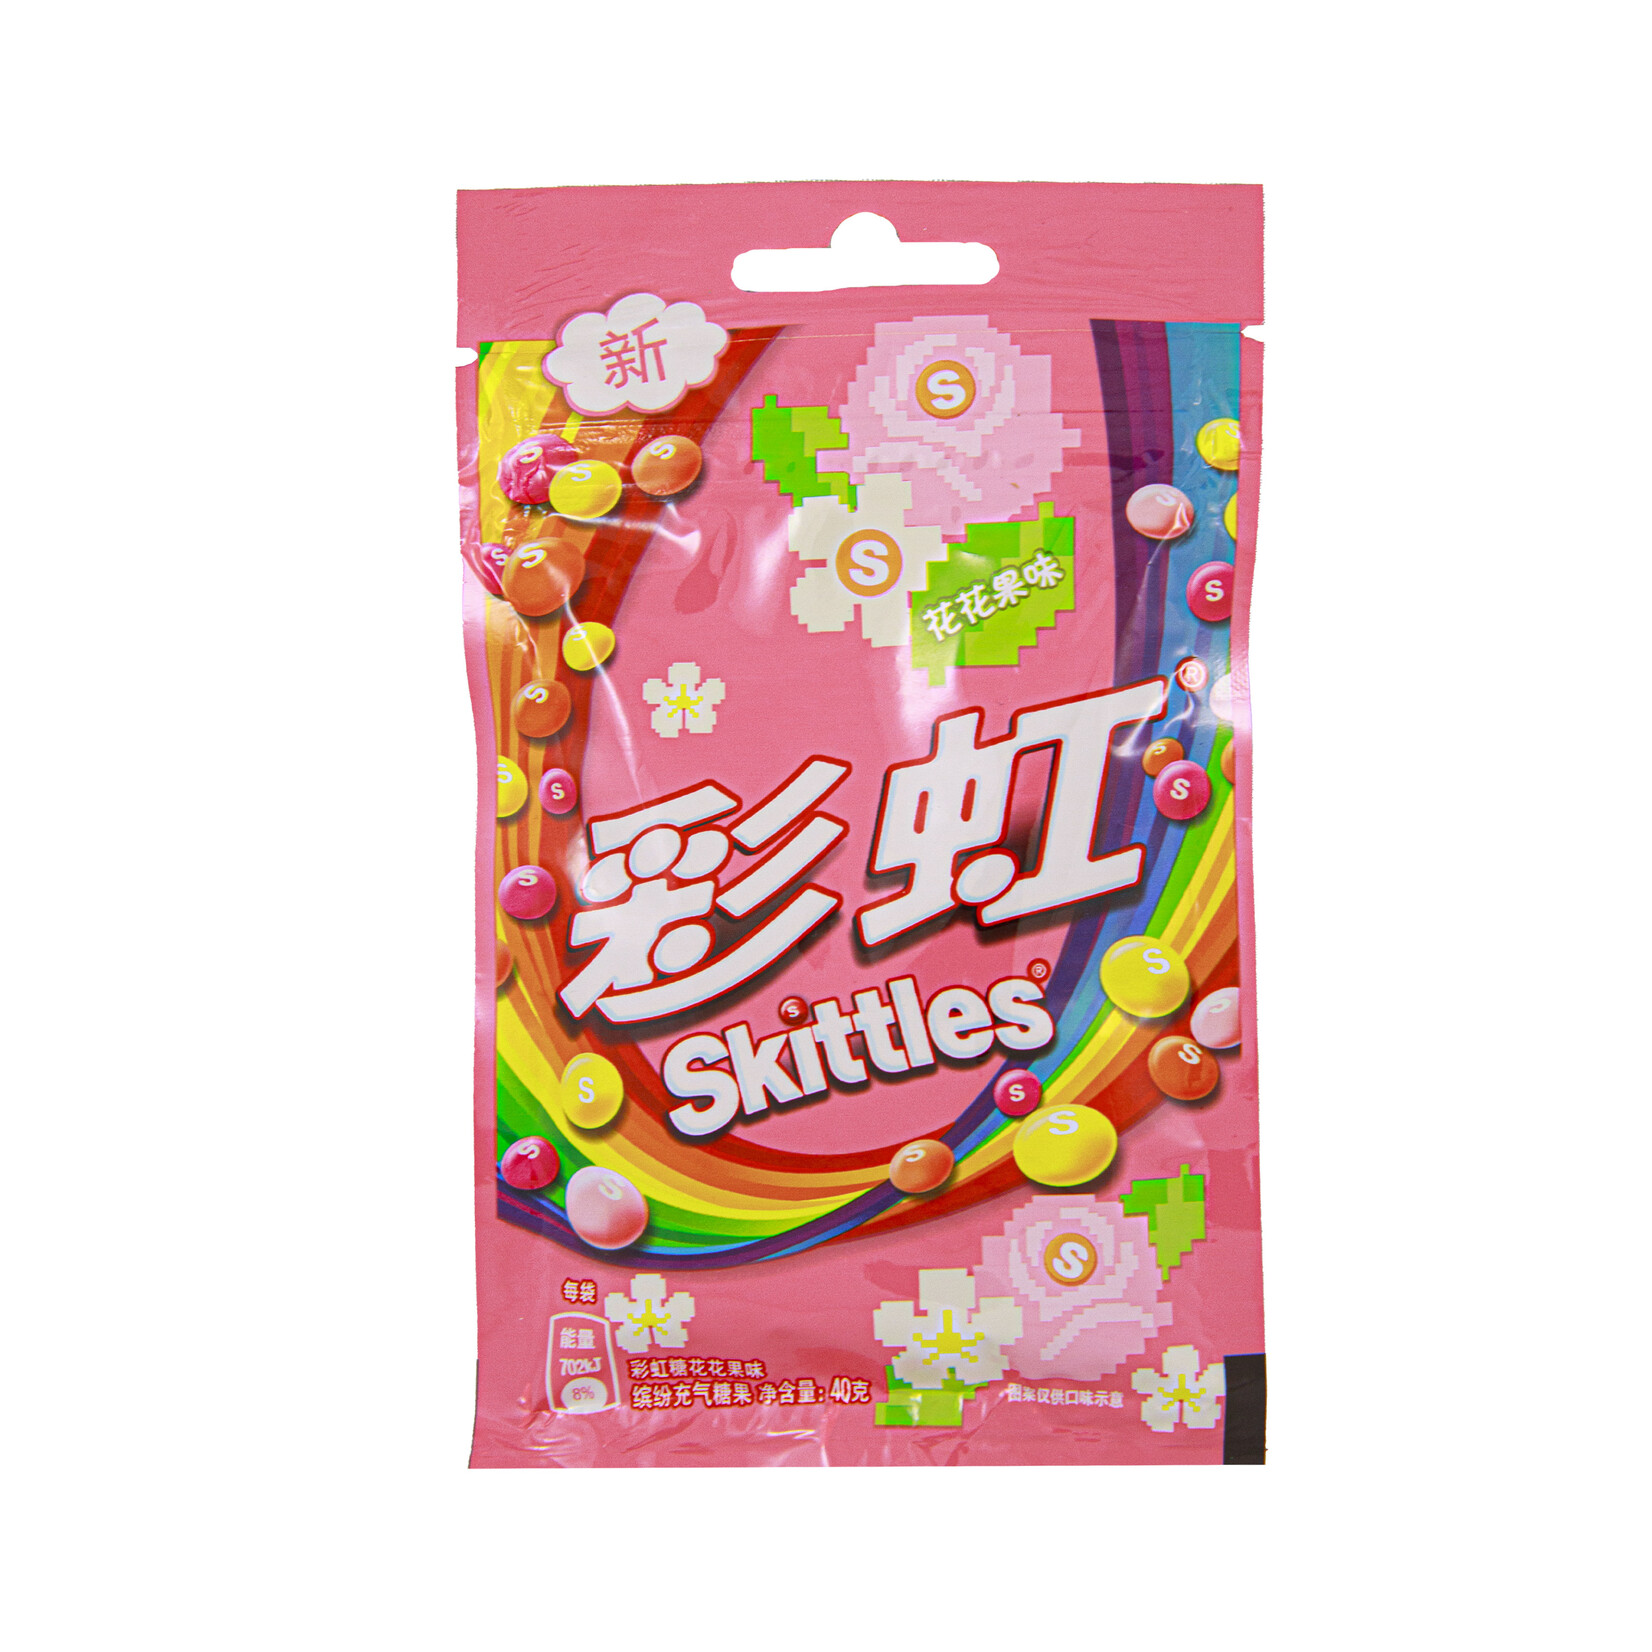 Skittles Skittles floral fruit 40g